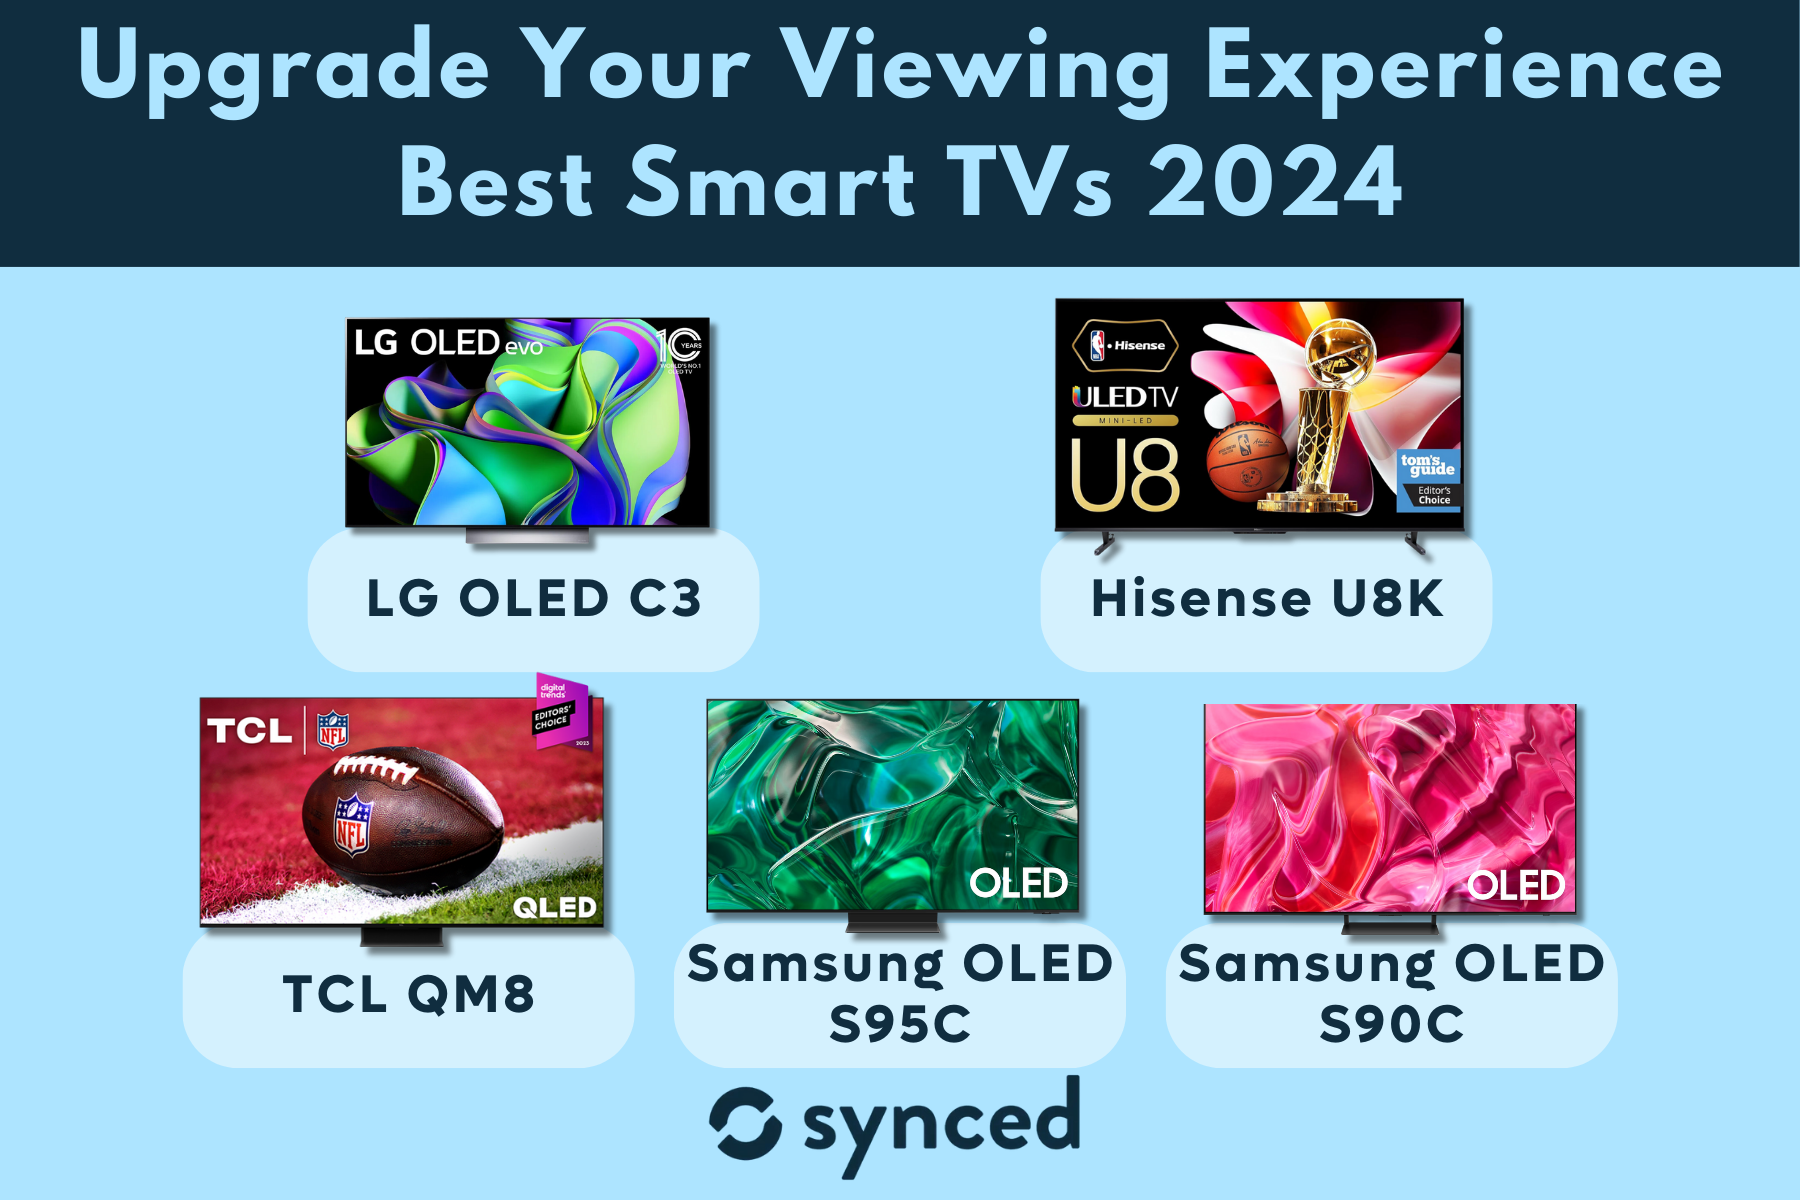 Best Smart TVs 2024